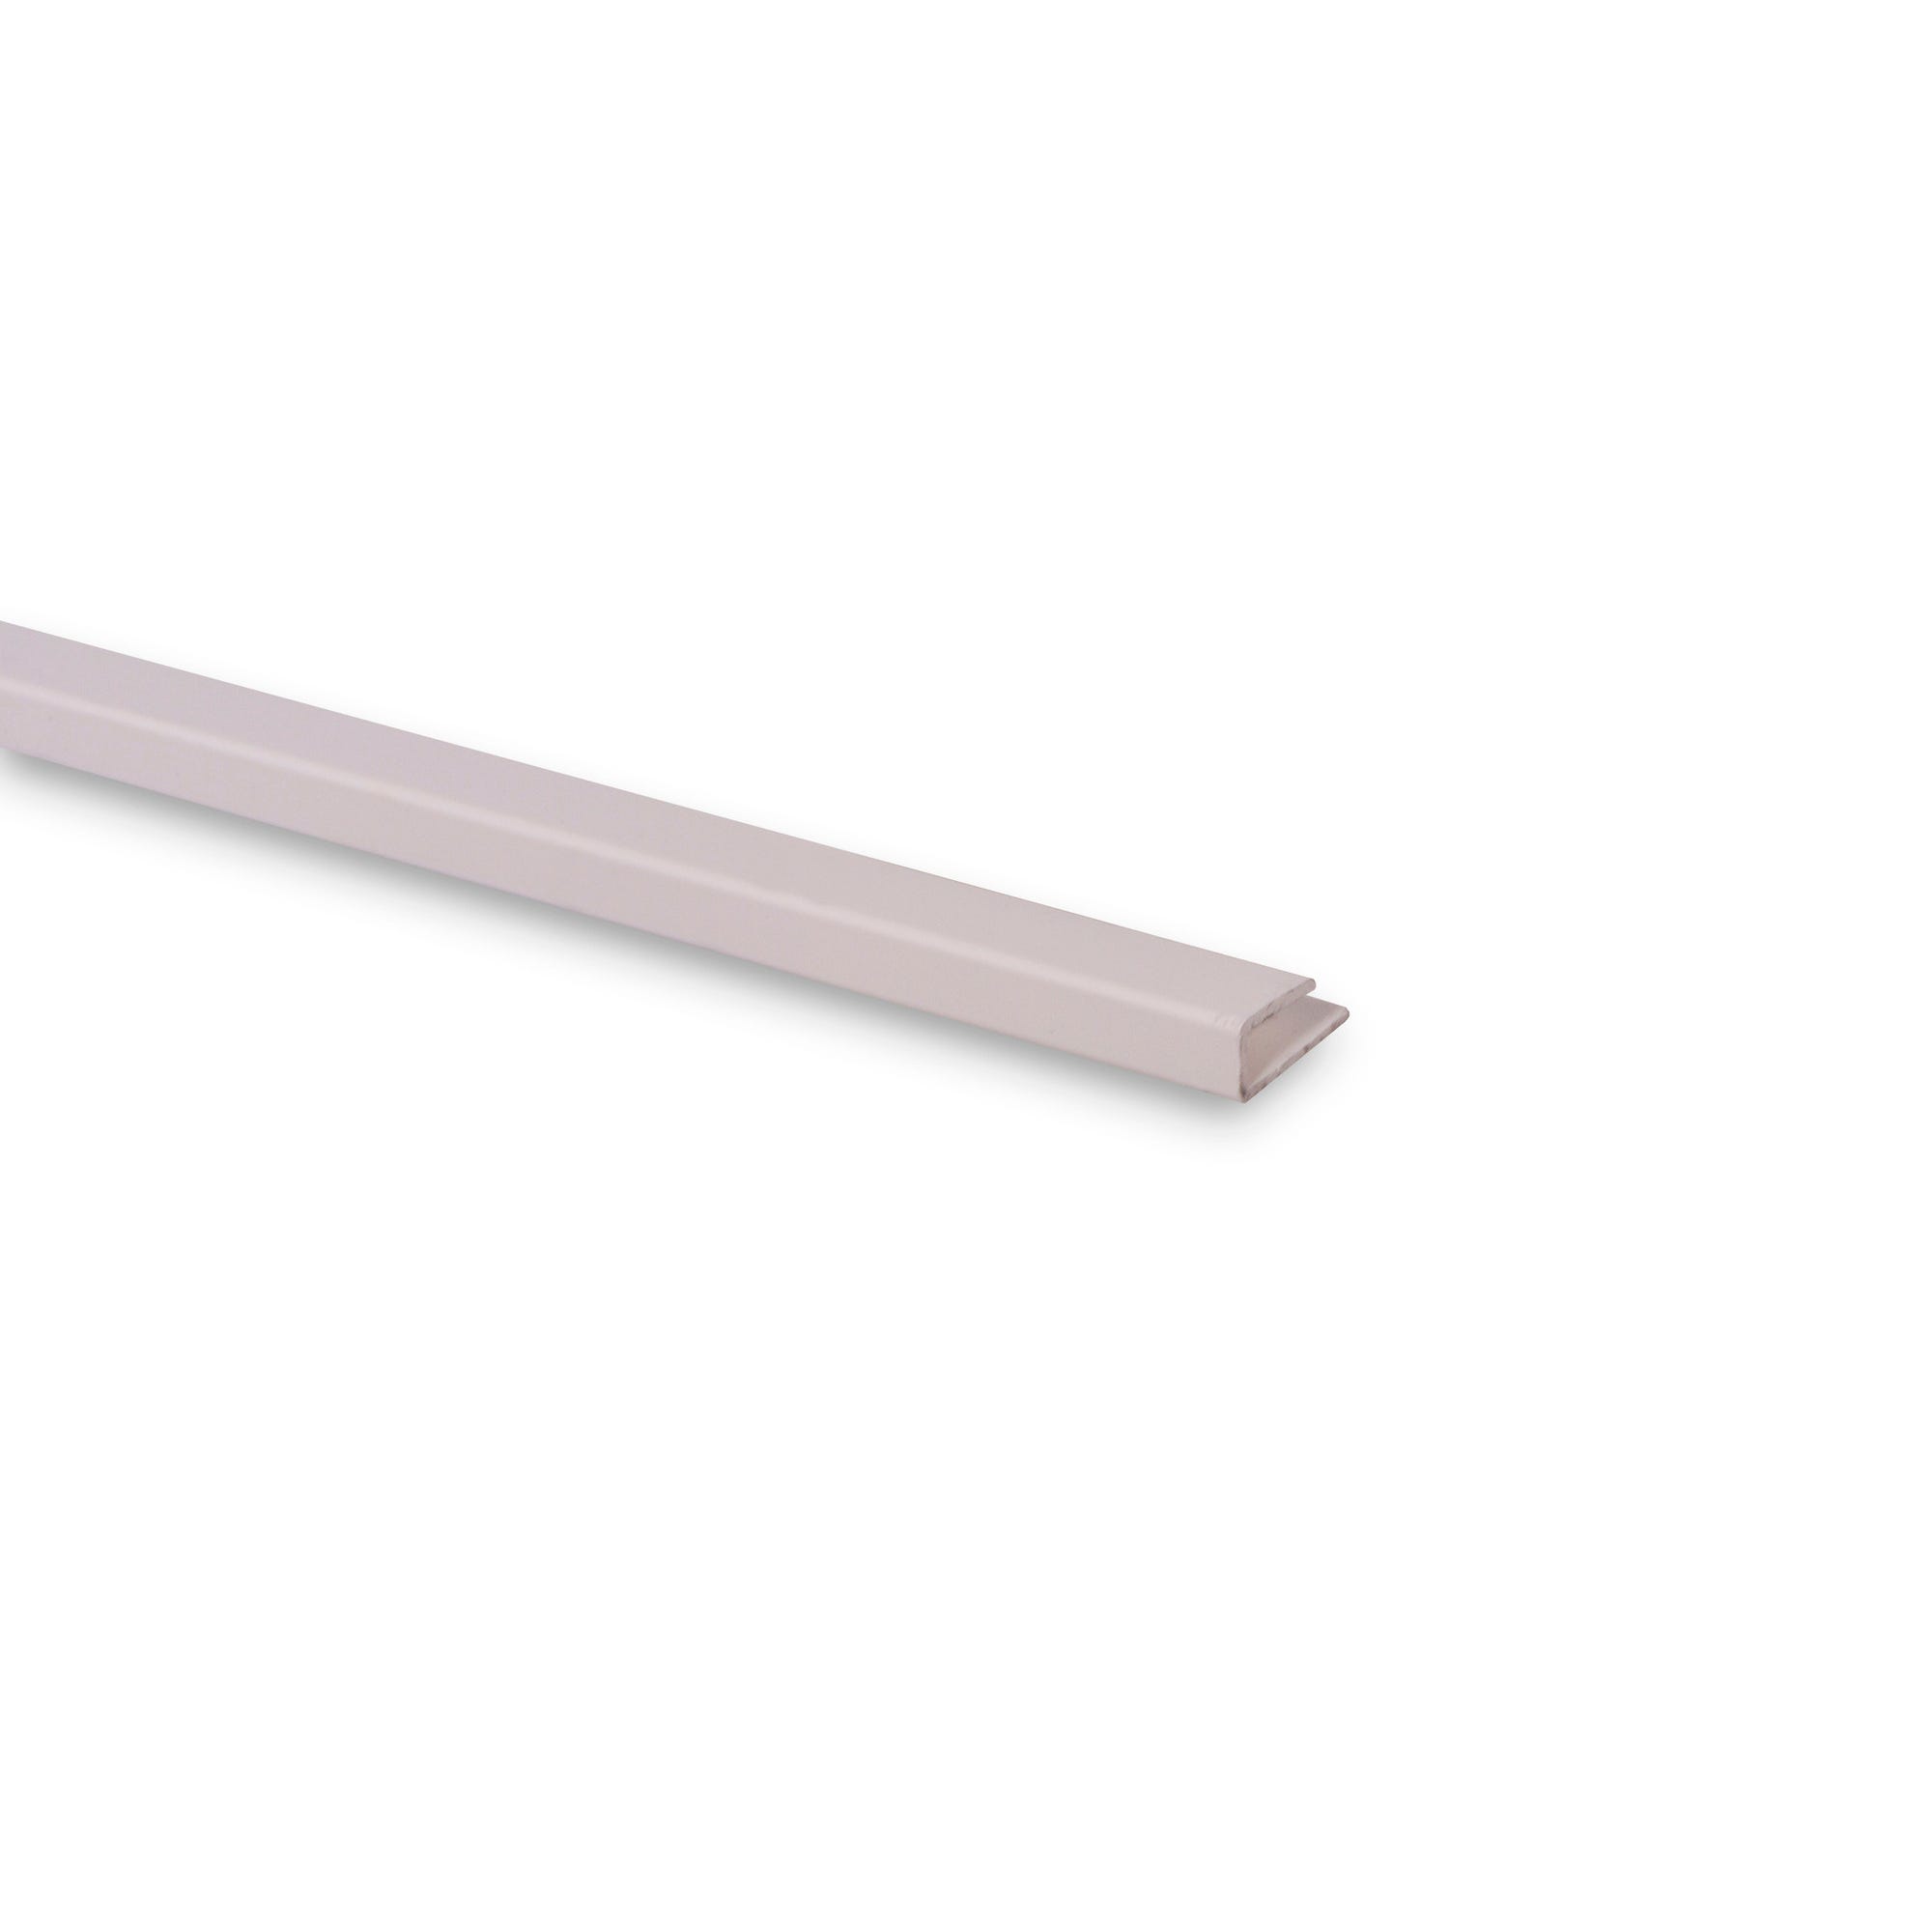 Finition PVC blanc pour épaisseur 3,5 mm L.100 cm 1